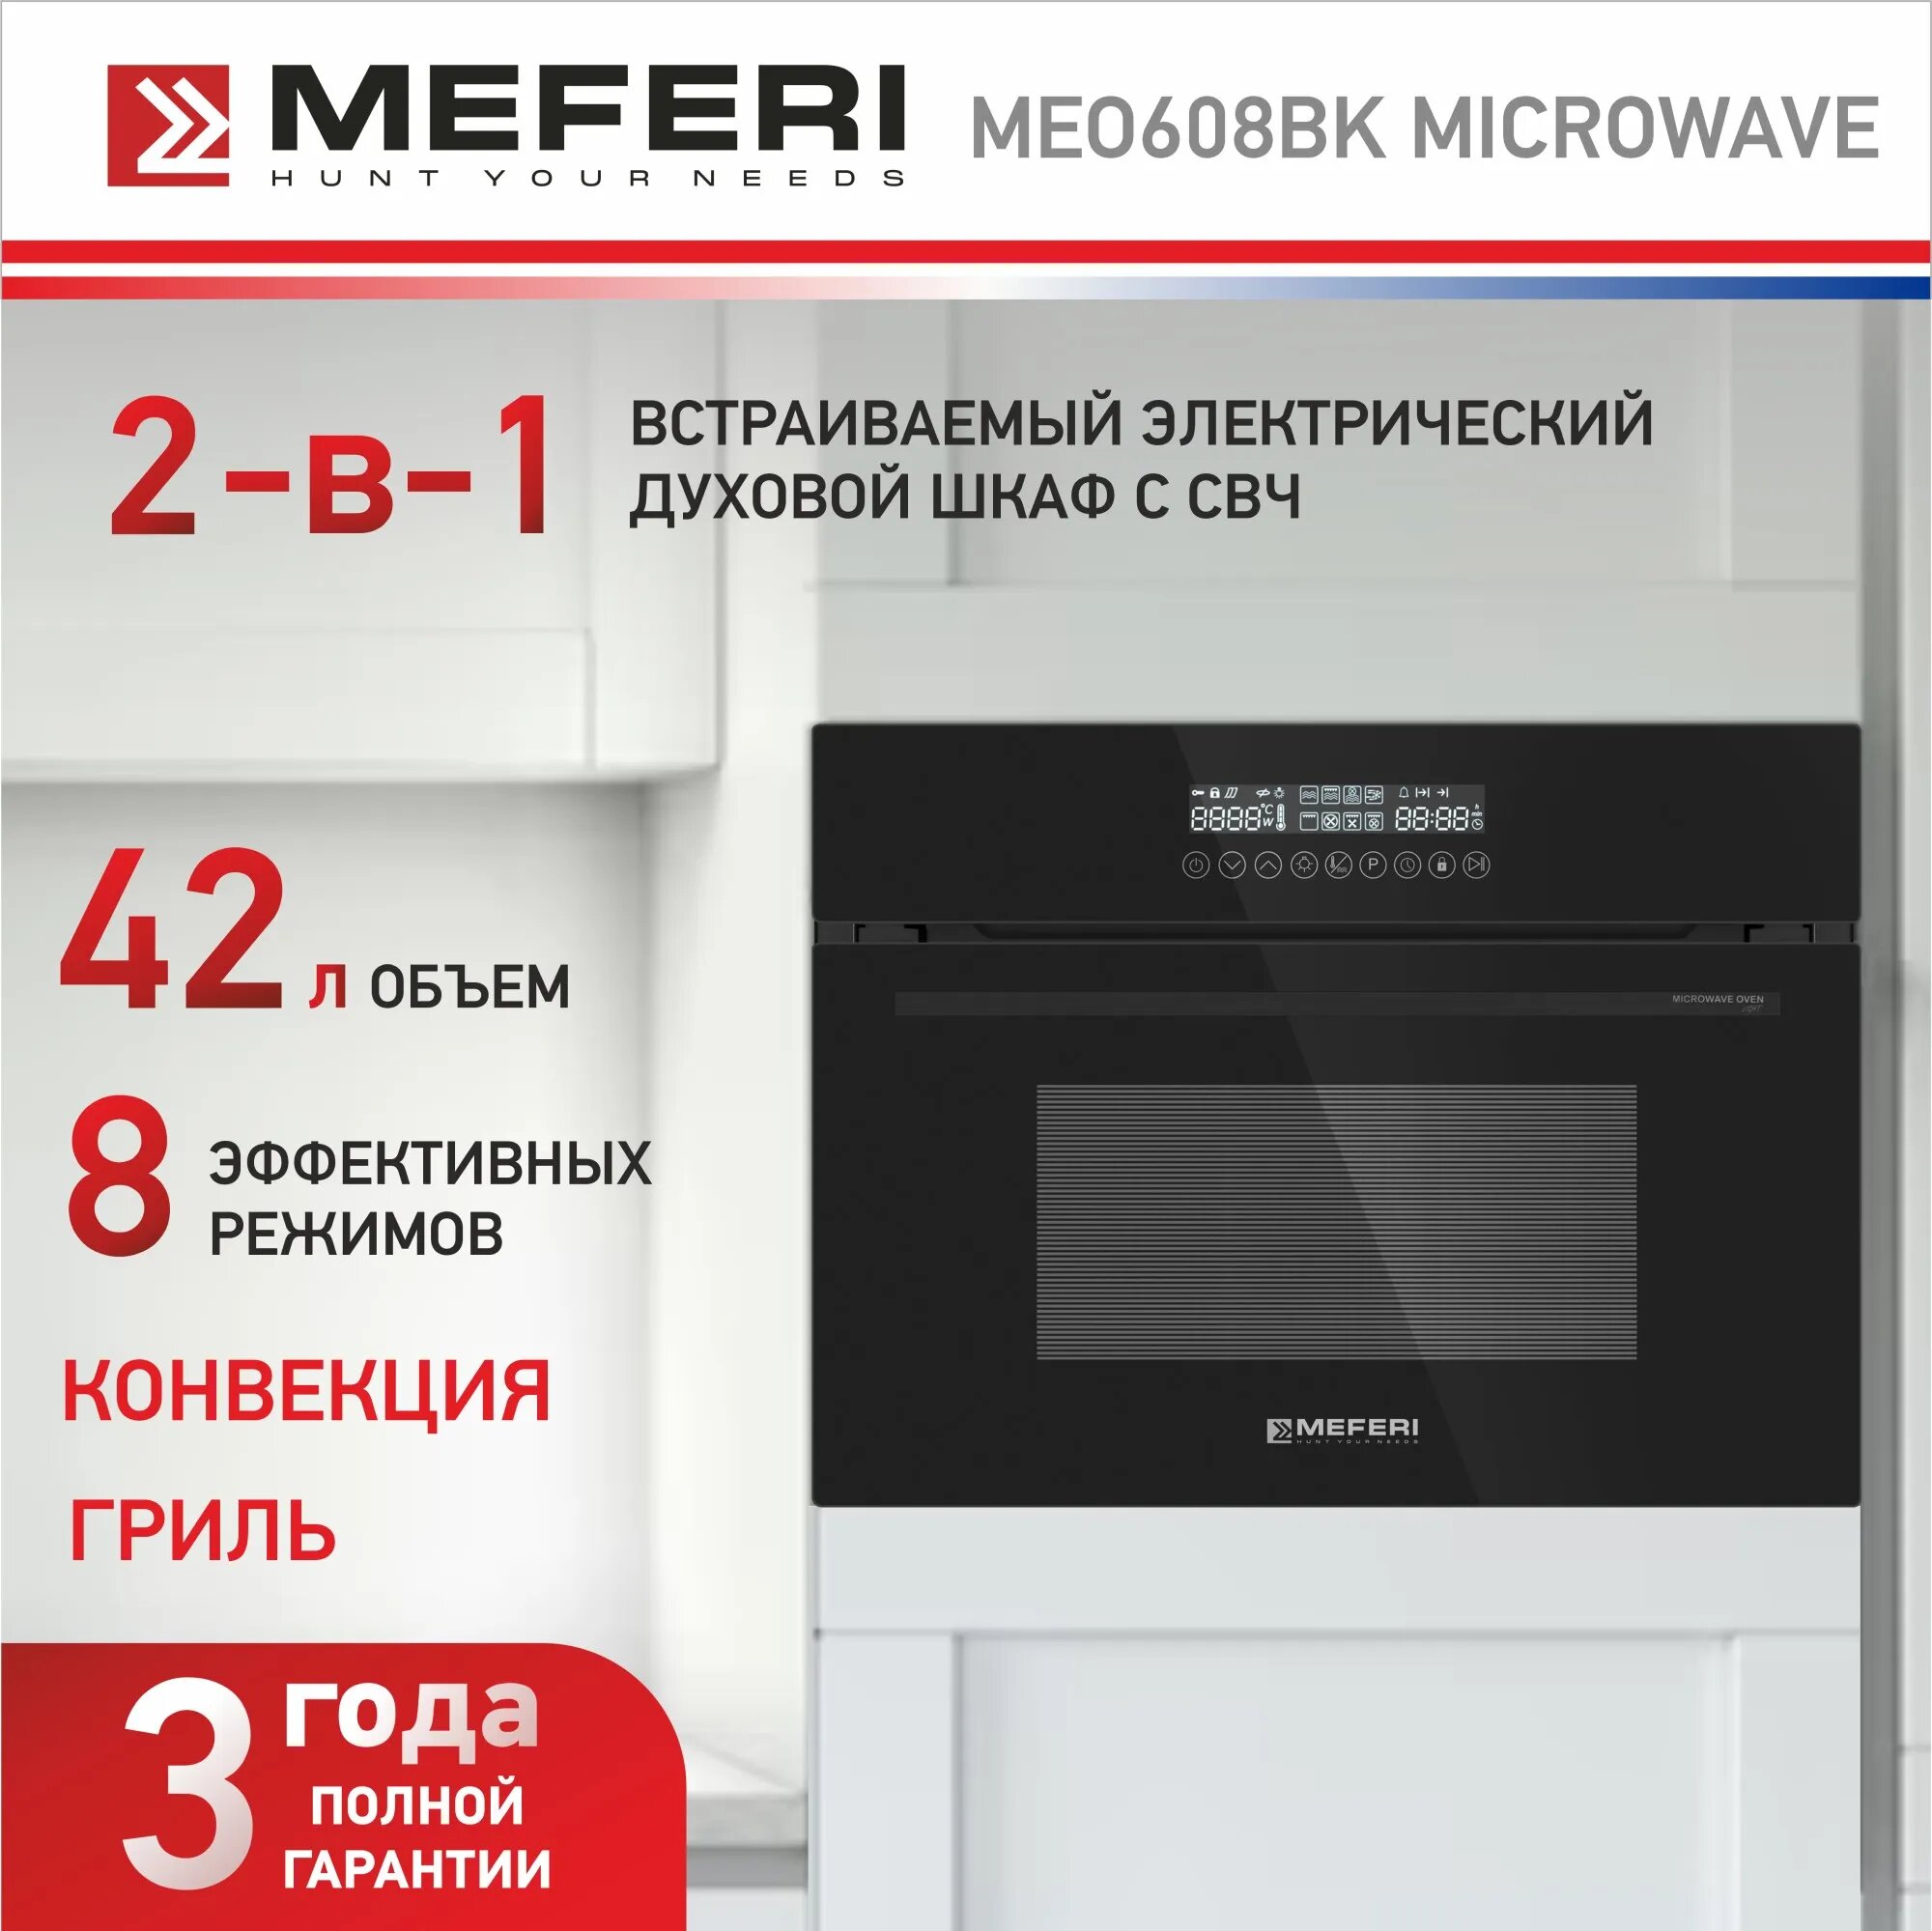 Электрический духовой шкаф Meferi MEO608BK MICROWAVE